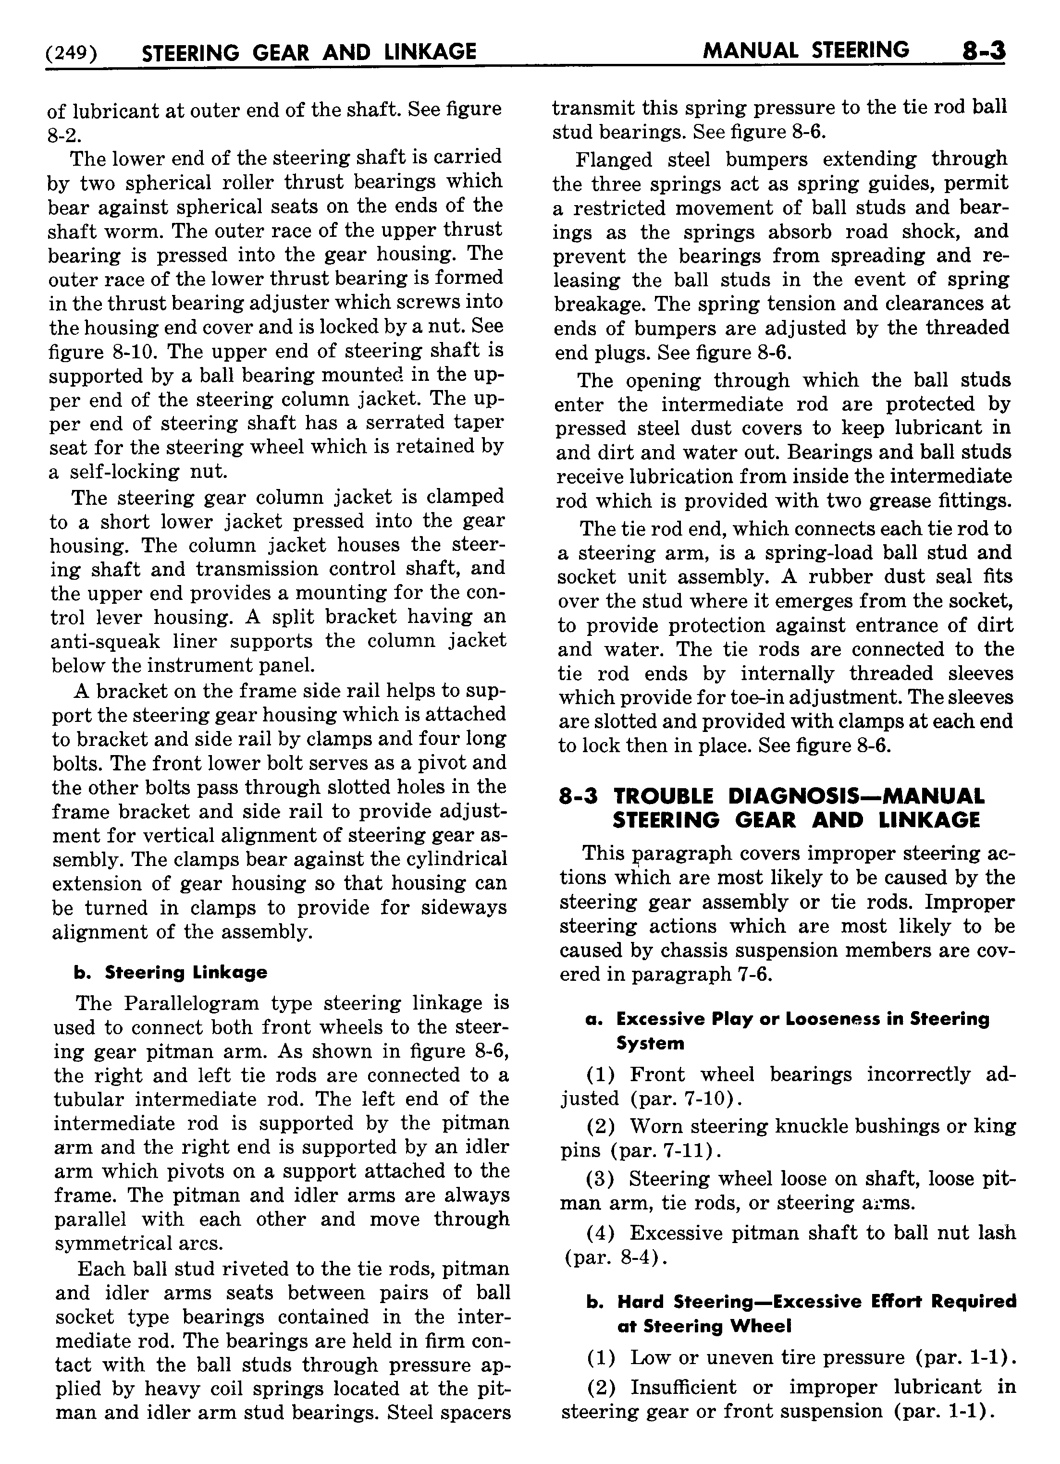 n_09 1955 Buick Shop Manual - Steering-003-003.jpg